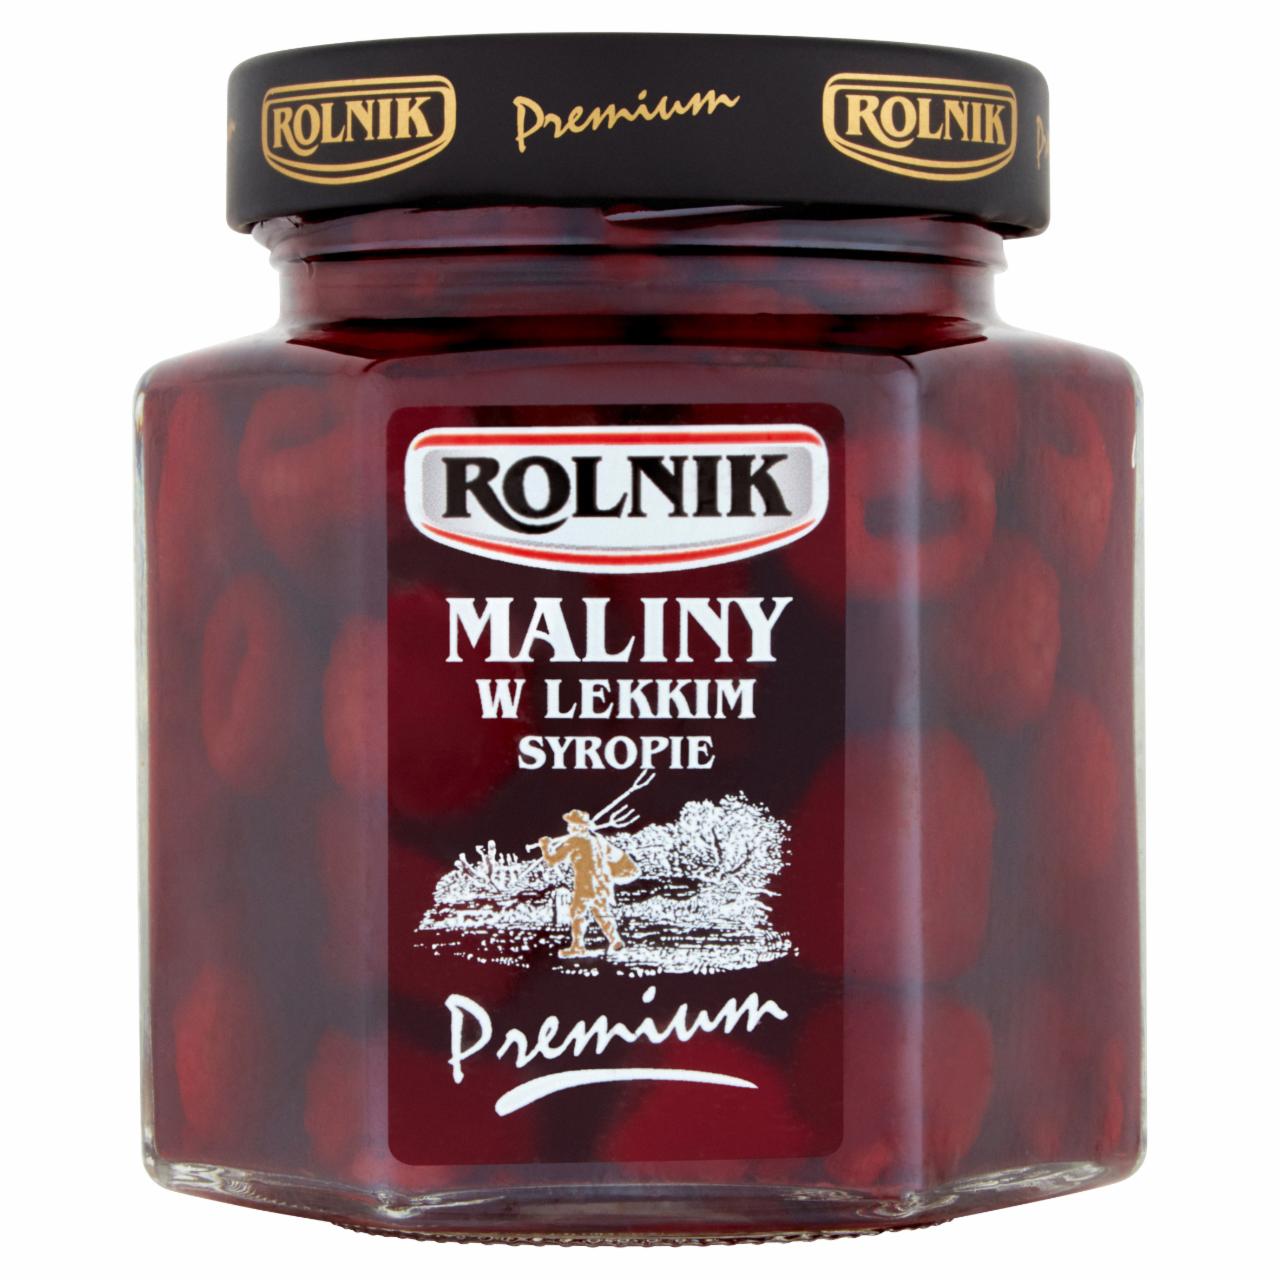 Zdjęcia - Rolnik Premium Maliny w lekkim syropie 320 g